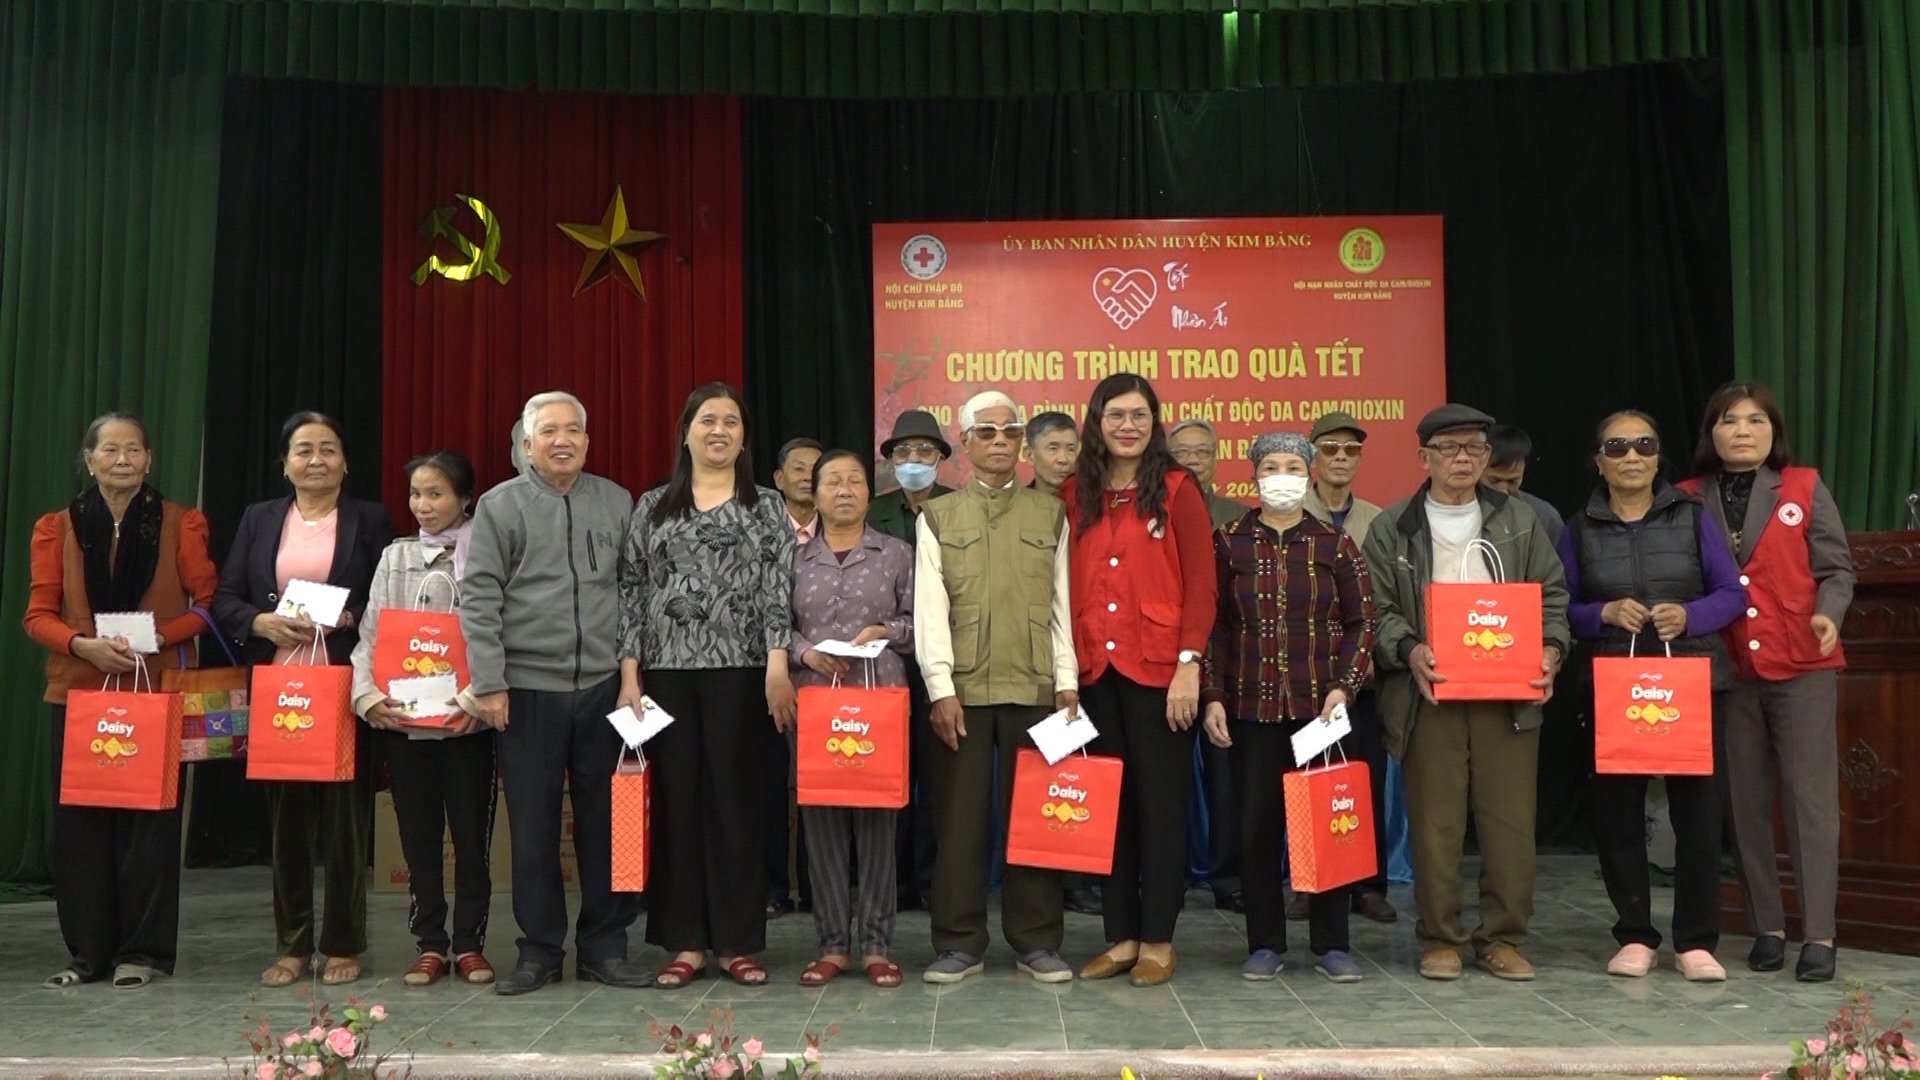 Hội NNCD Da cam Kim Bảng phối hợp trao quà tết cho các hội viên co hoàn cảnh khó khăn.jpg